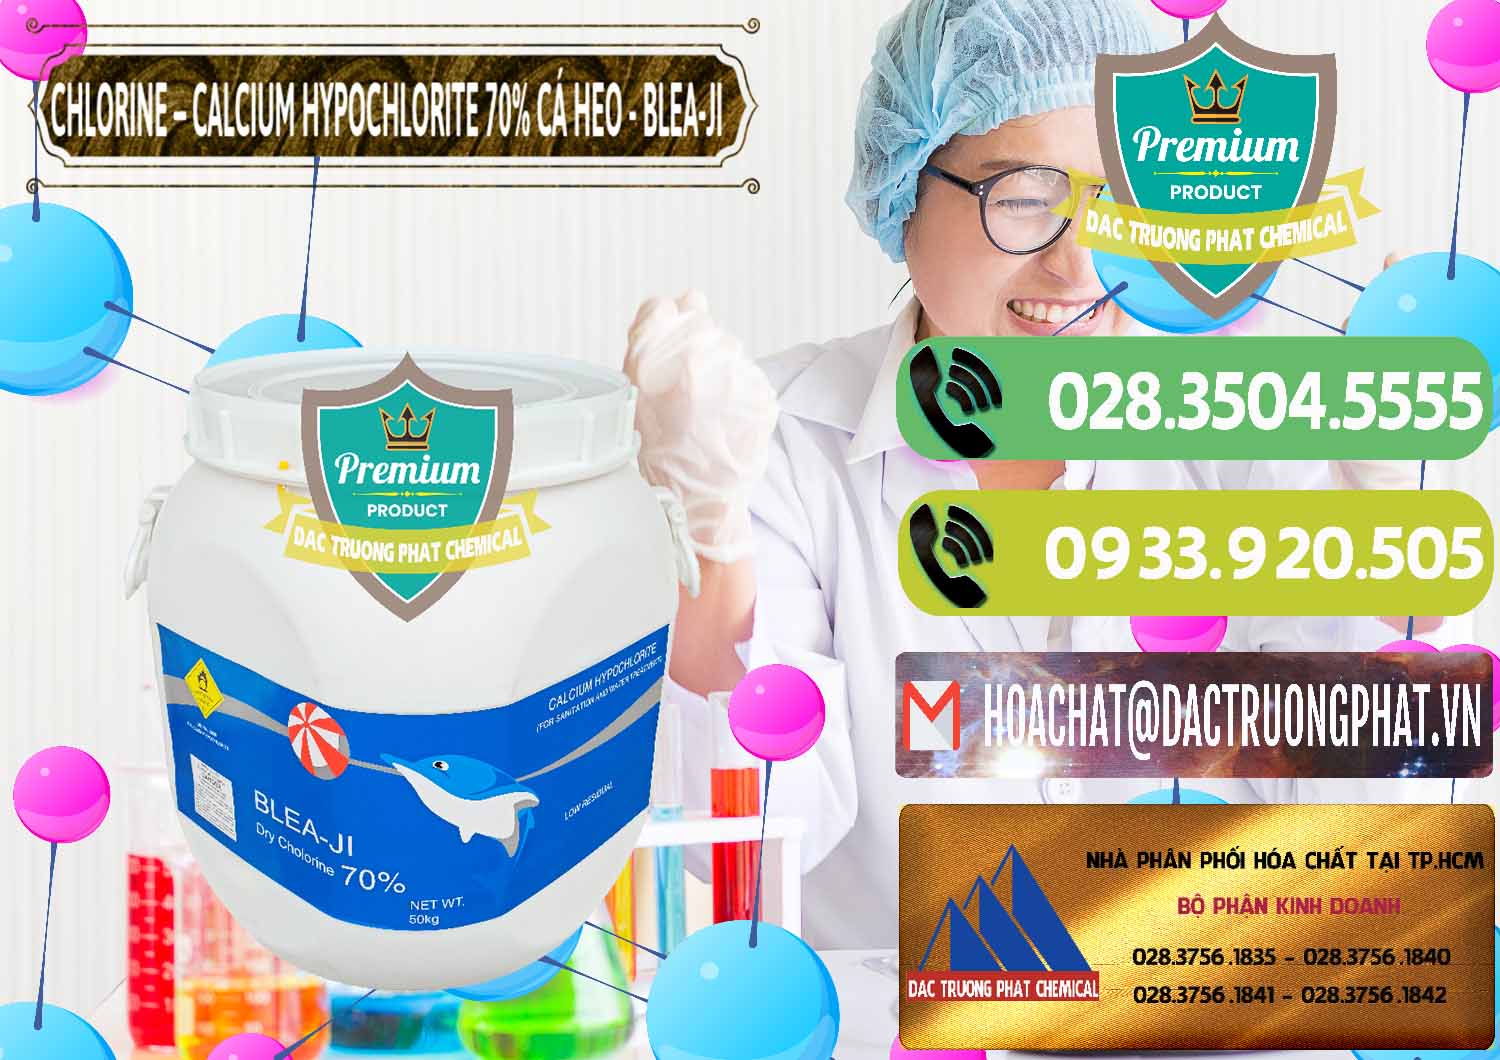 Công ty chuyên nhập khẩu - bán Clorin - Chlorine Cá Heo 70% Blea-Ji Trung Quốc China - 0056 - Công ty bán - cung cấp hóa chất tại TP.HCM - hoachatmientay.vn